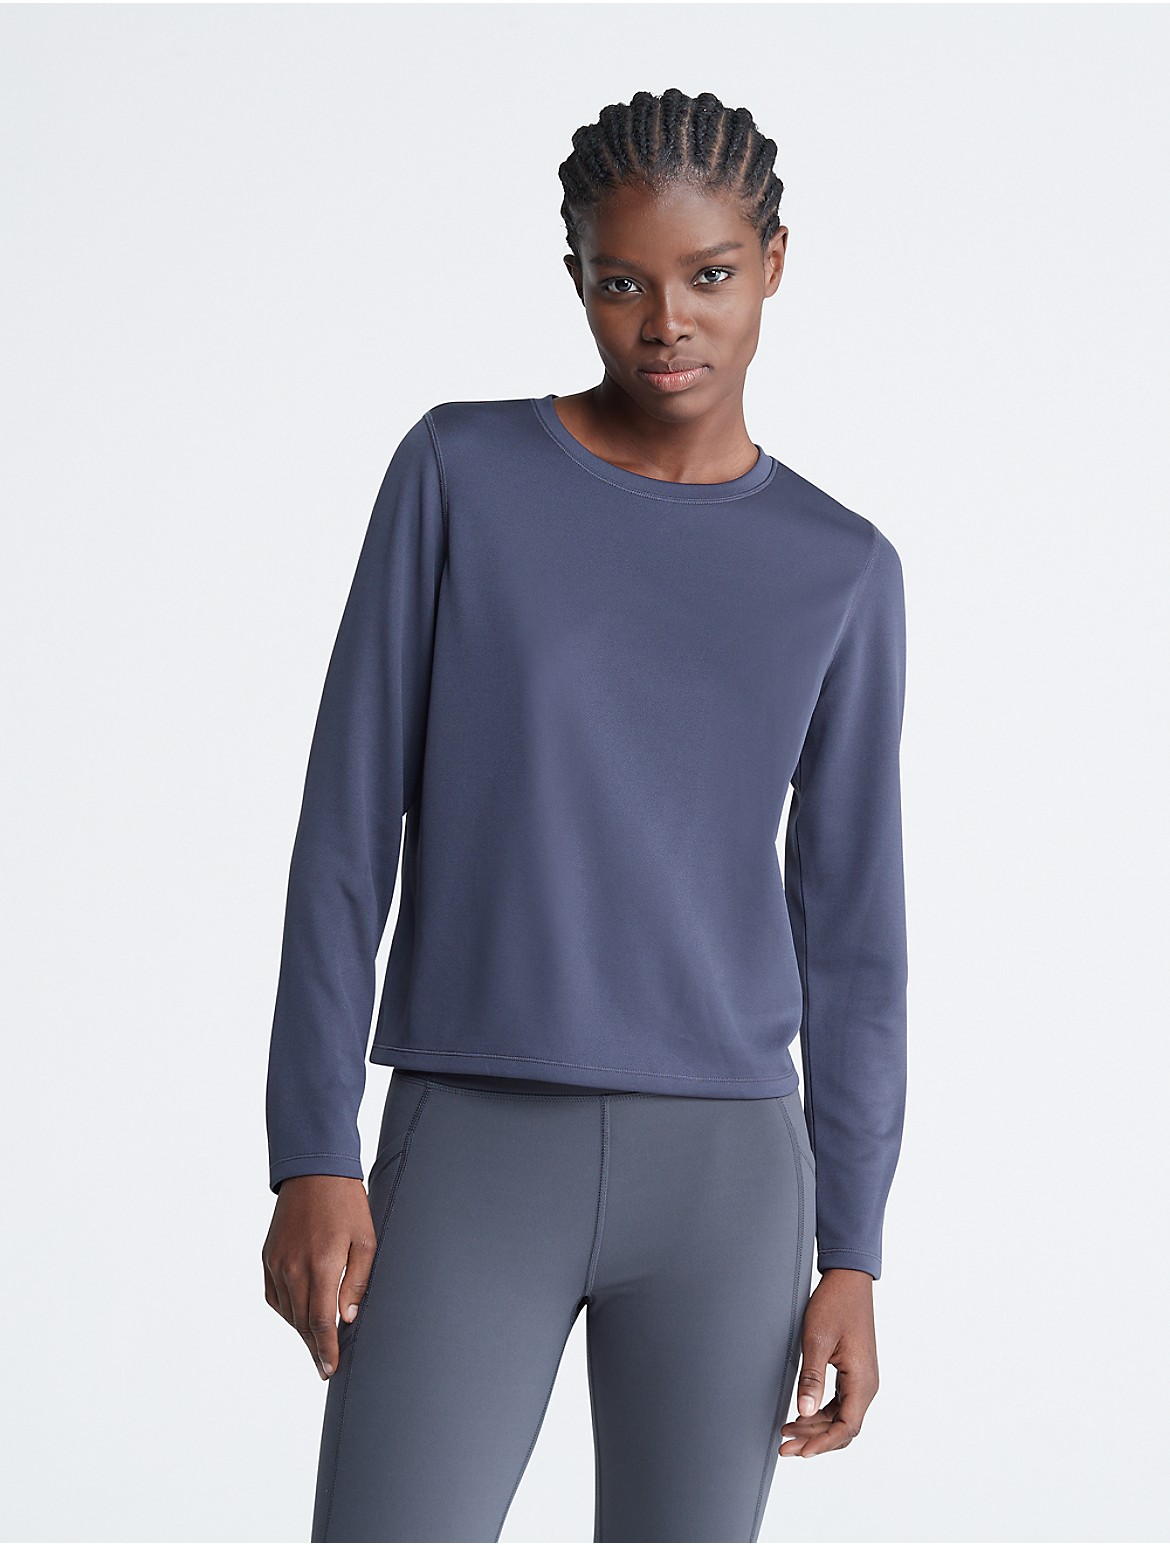 Calvin Klein Women's Performance Tech Pique T-Shirt - Blue - L